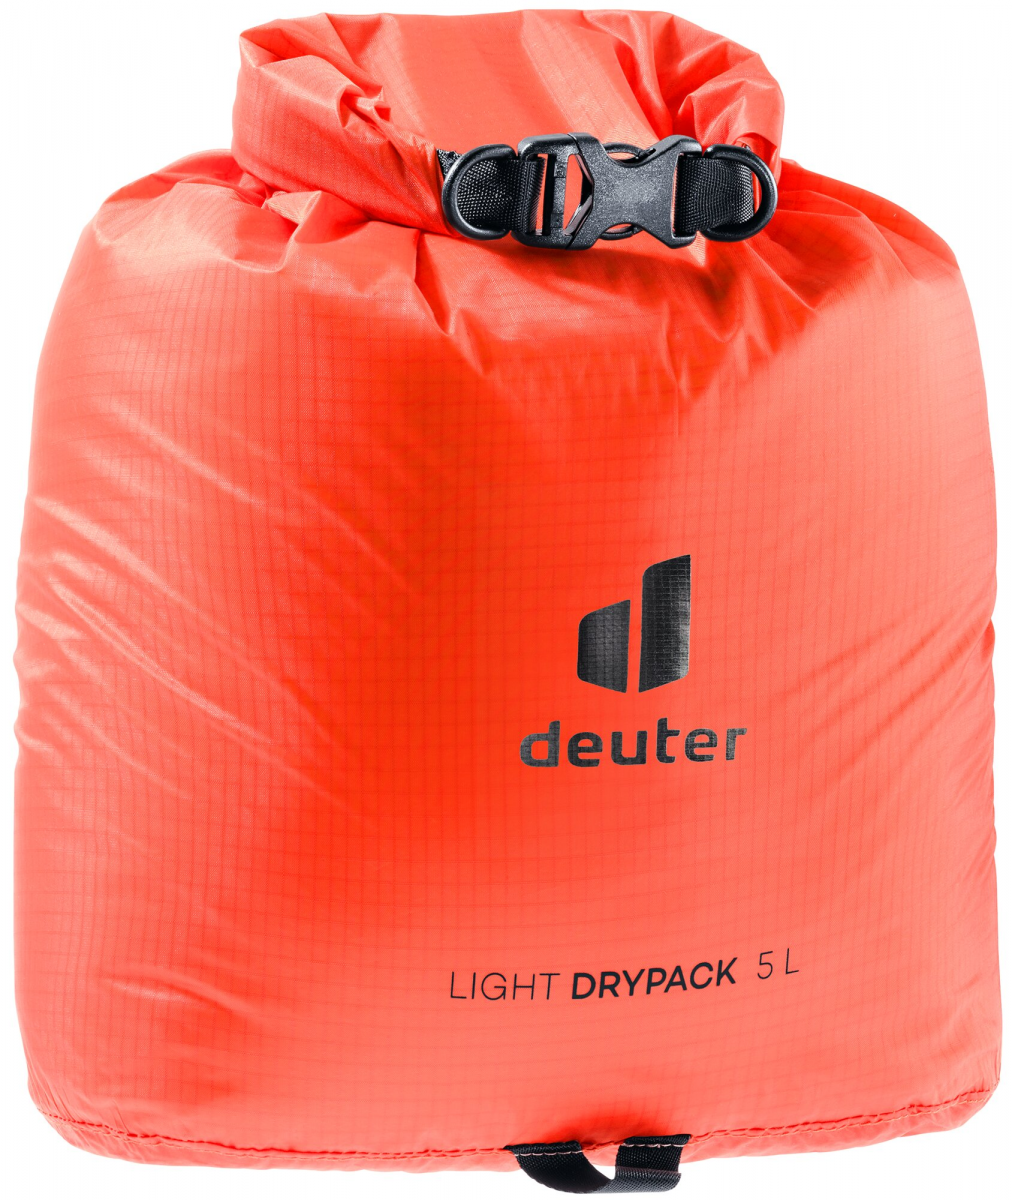 Light Drypack 5